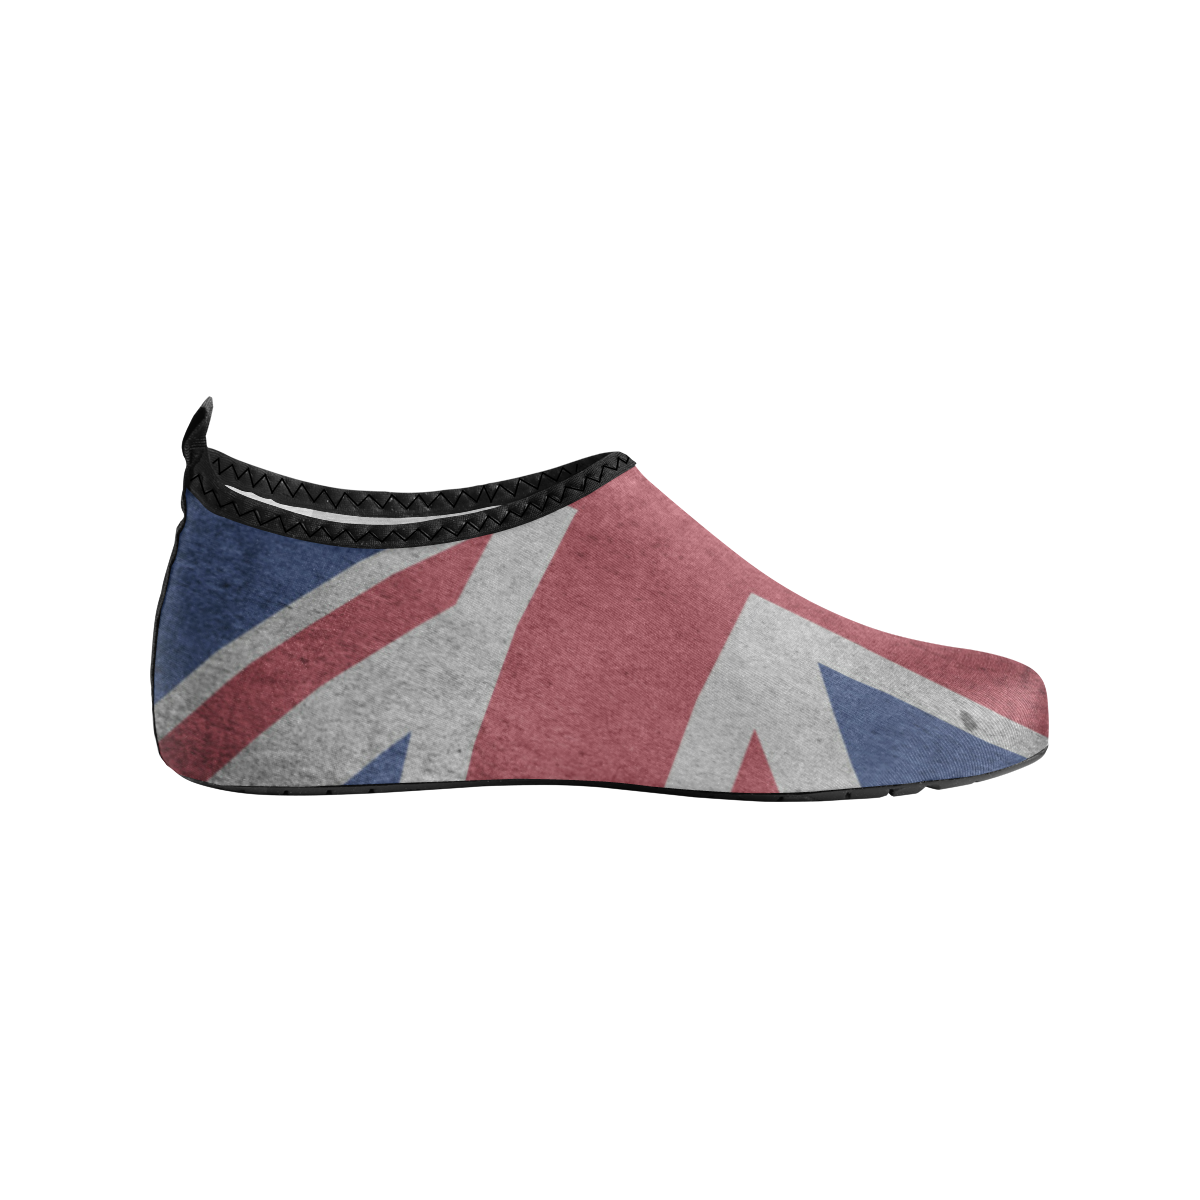 United Kingdom Union Jack Flag - Grunge 1 Women's Slip-On Water Shoes (Model 056)